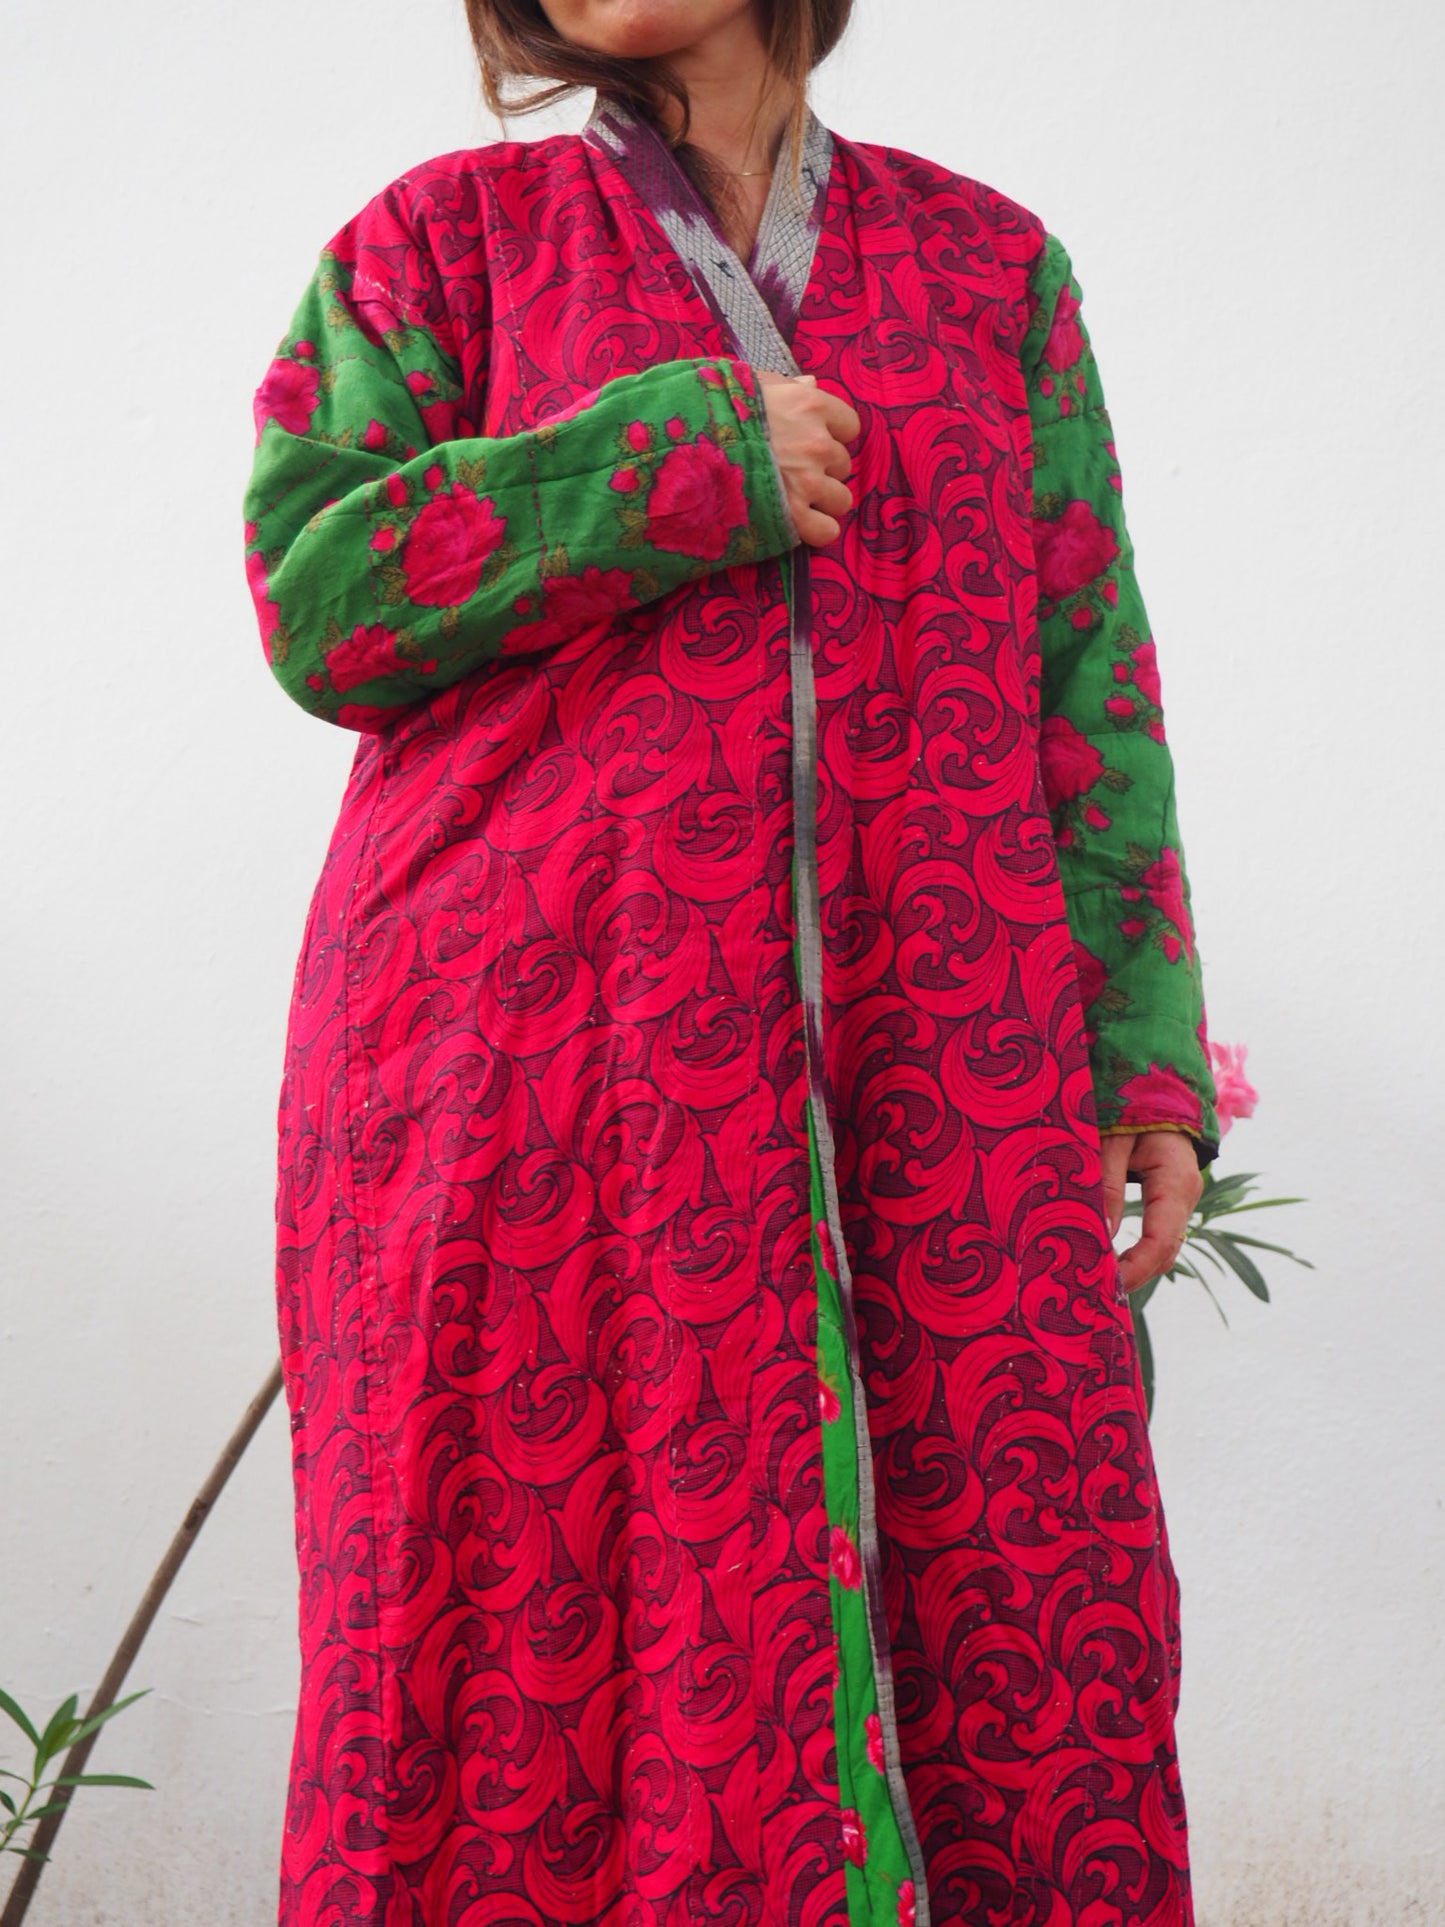 Amazing silk Uzbekistan hand woven Ikat ceremony jacket